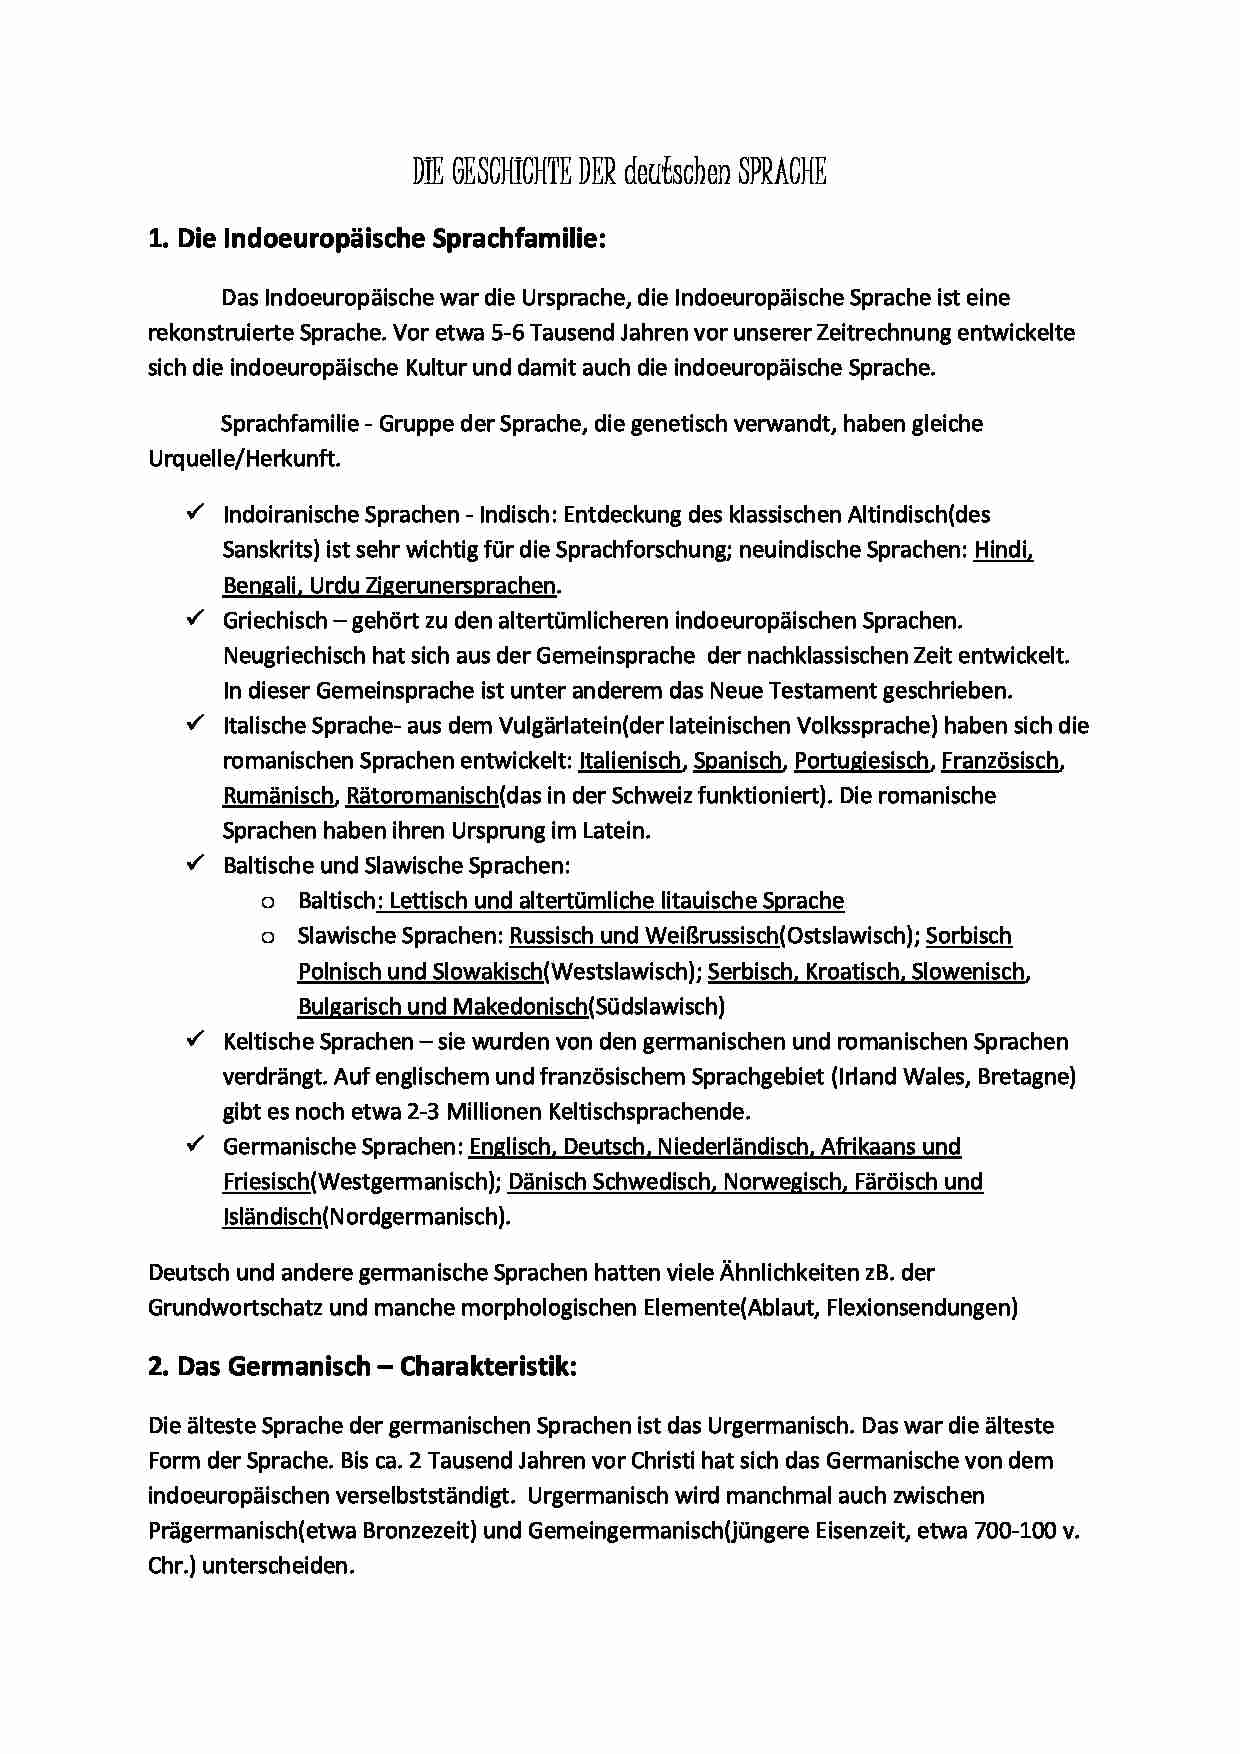 Historia języka niemieckiego - materiały w języku niemieckim - strona 1